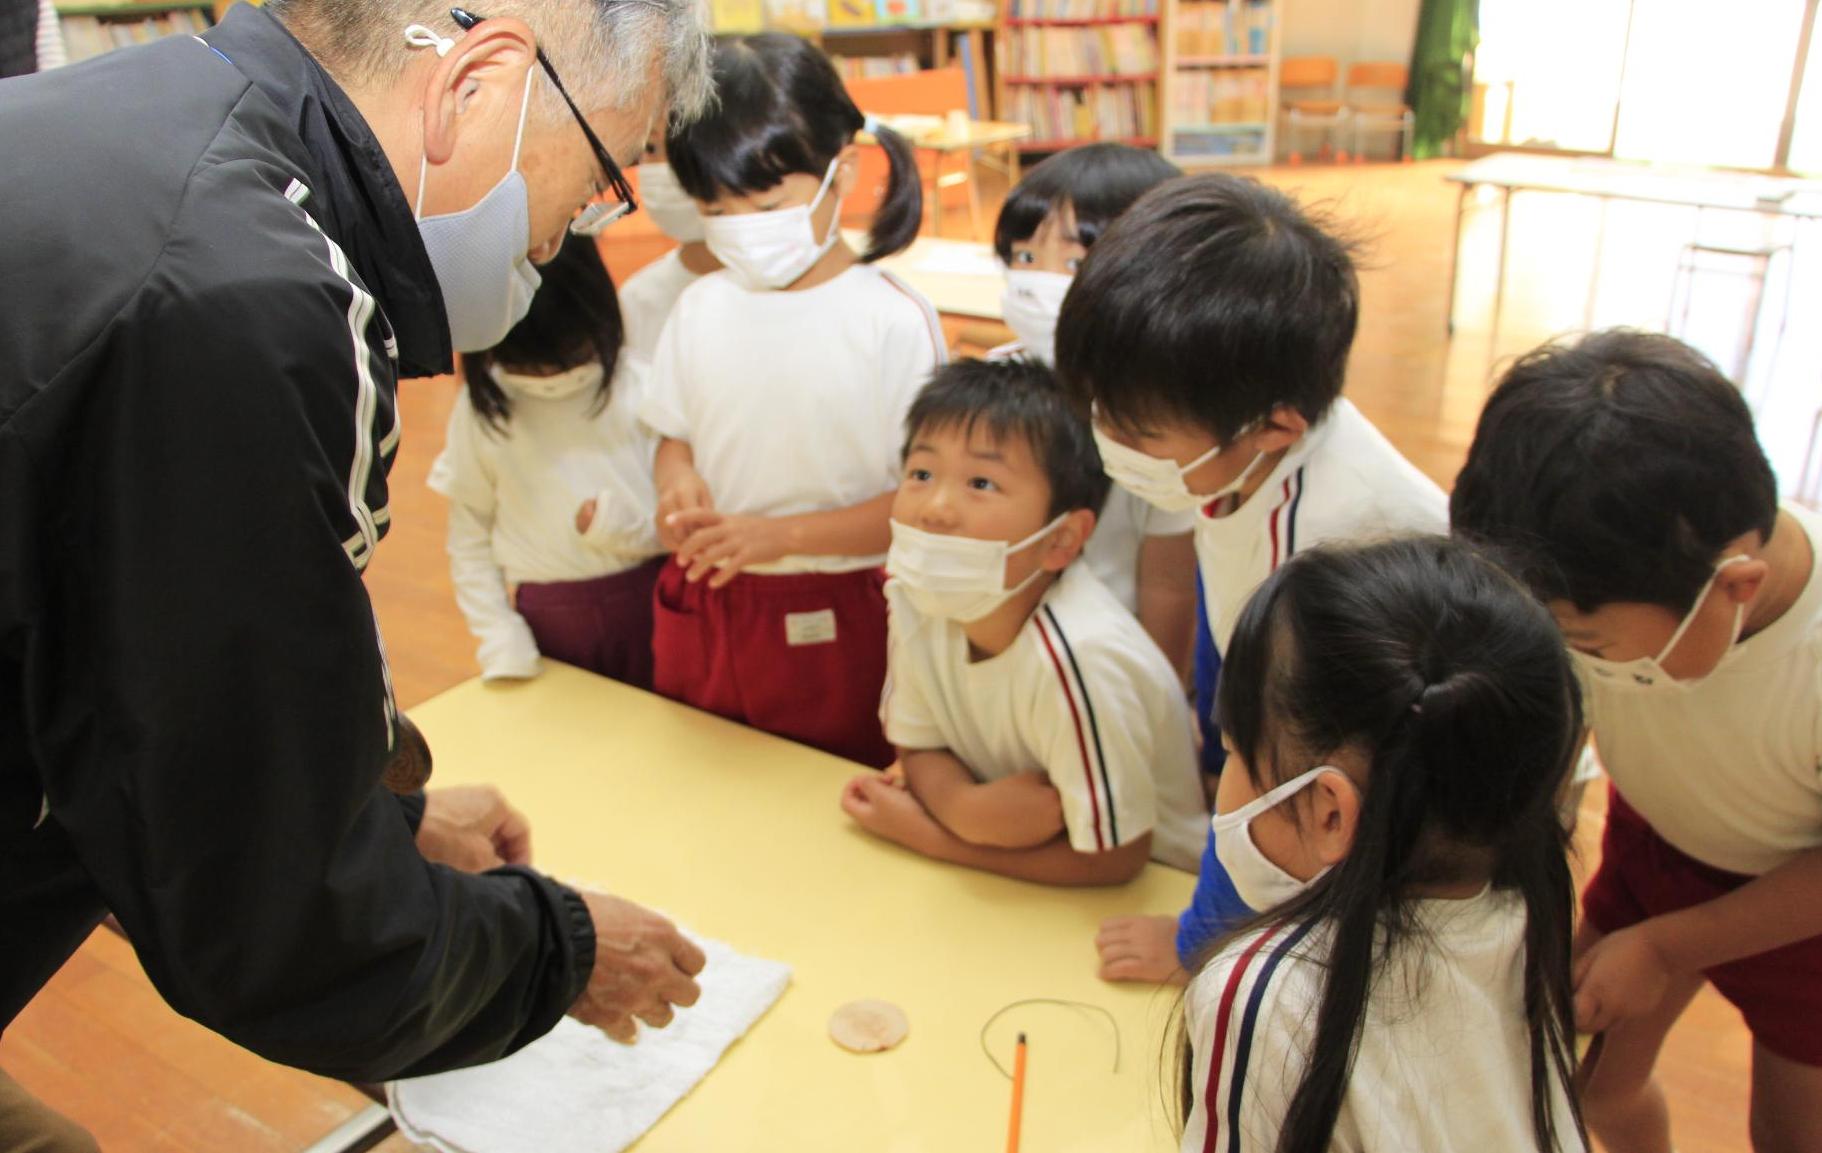 波賀幼稚園で行われた木工教室で講師の話を目を輝かせて聞いている園児たちの写真